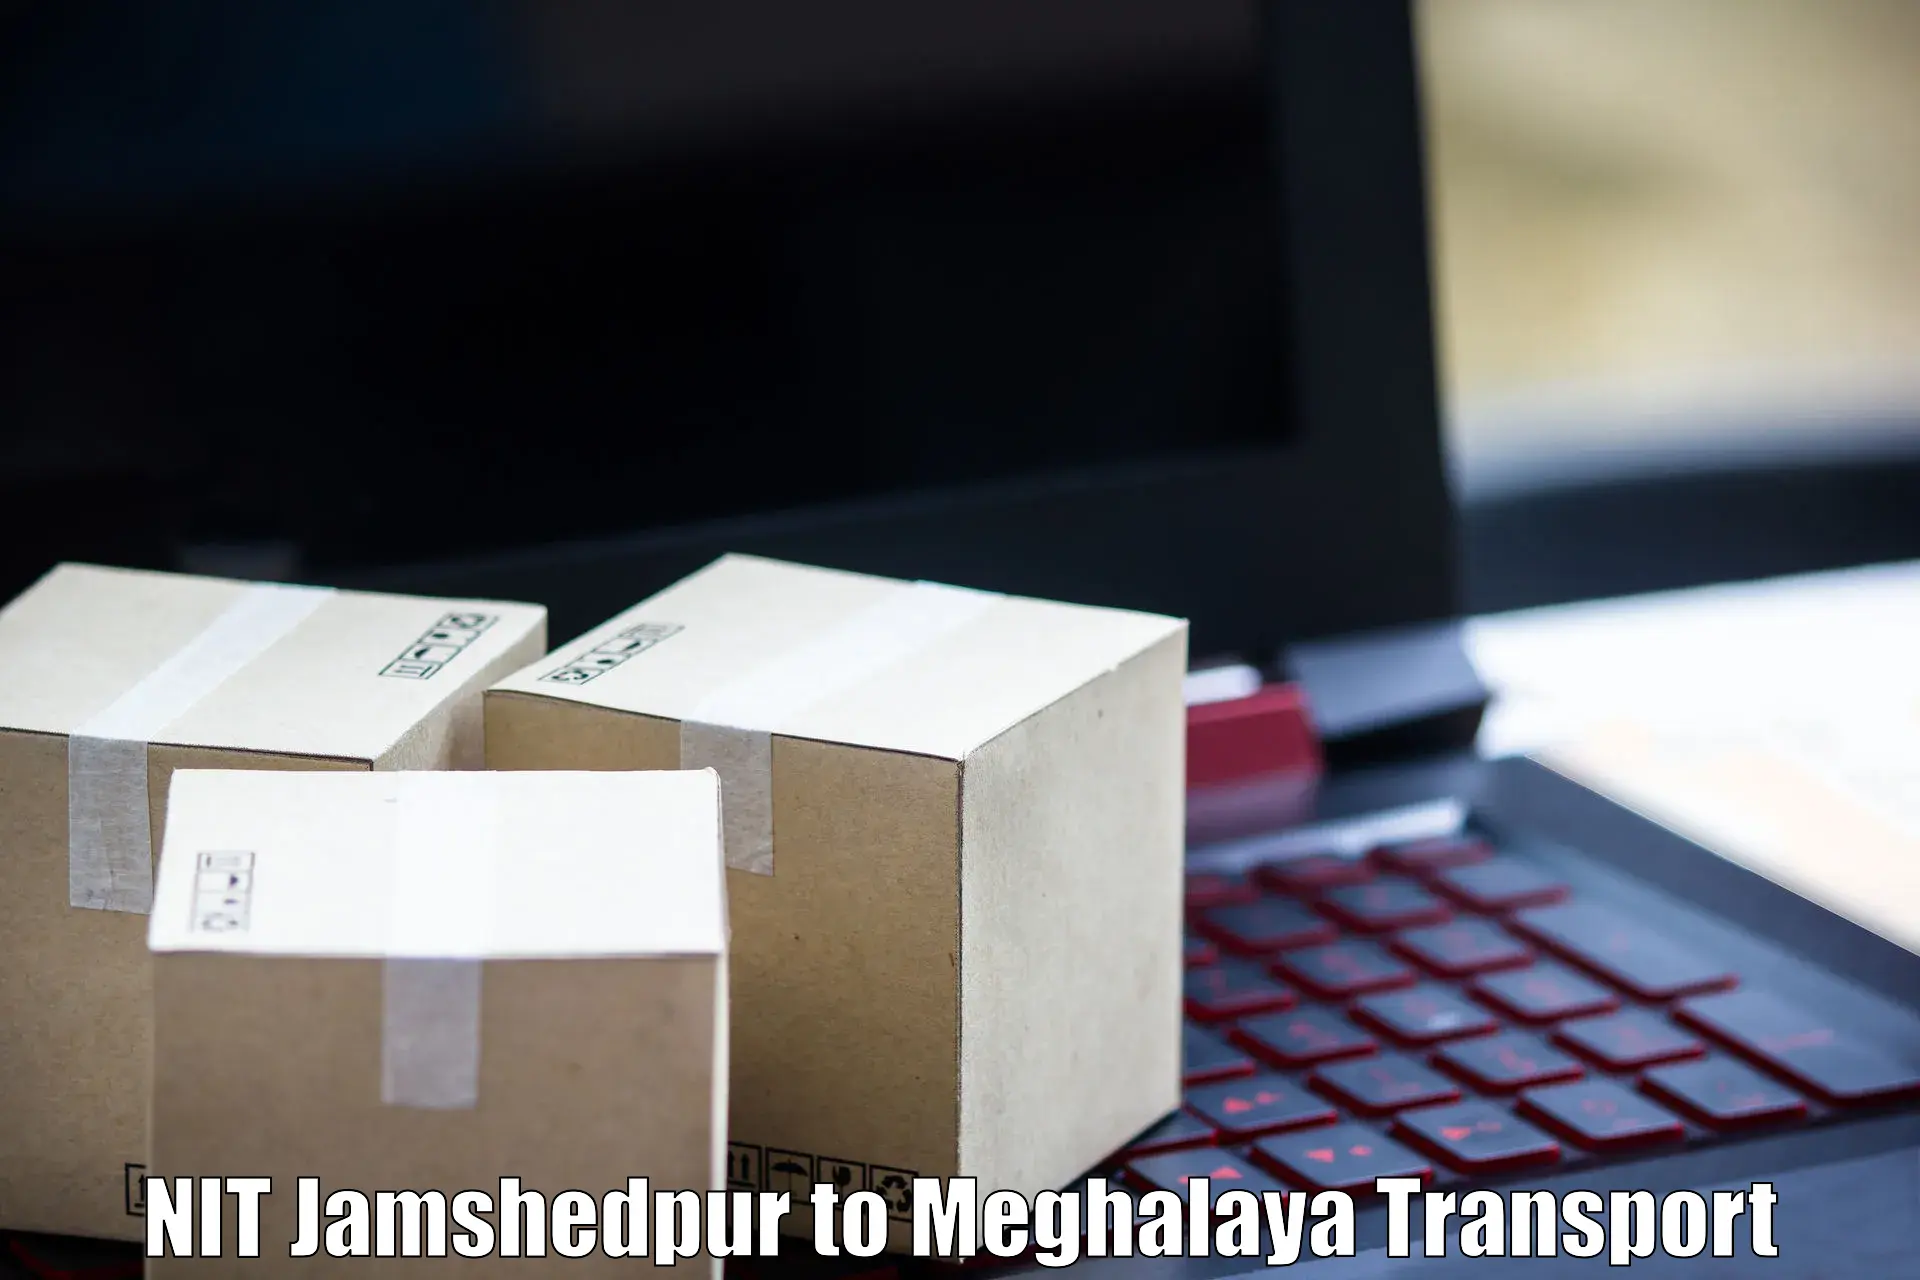 Shipping partner NIT Jamshedpur to Meghalaya